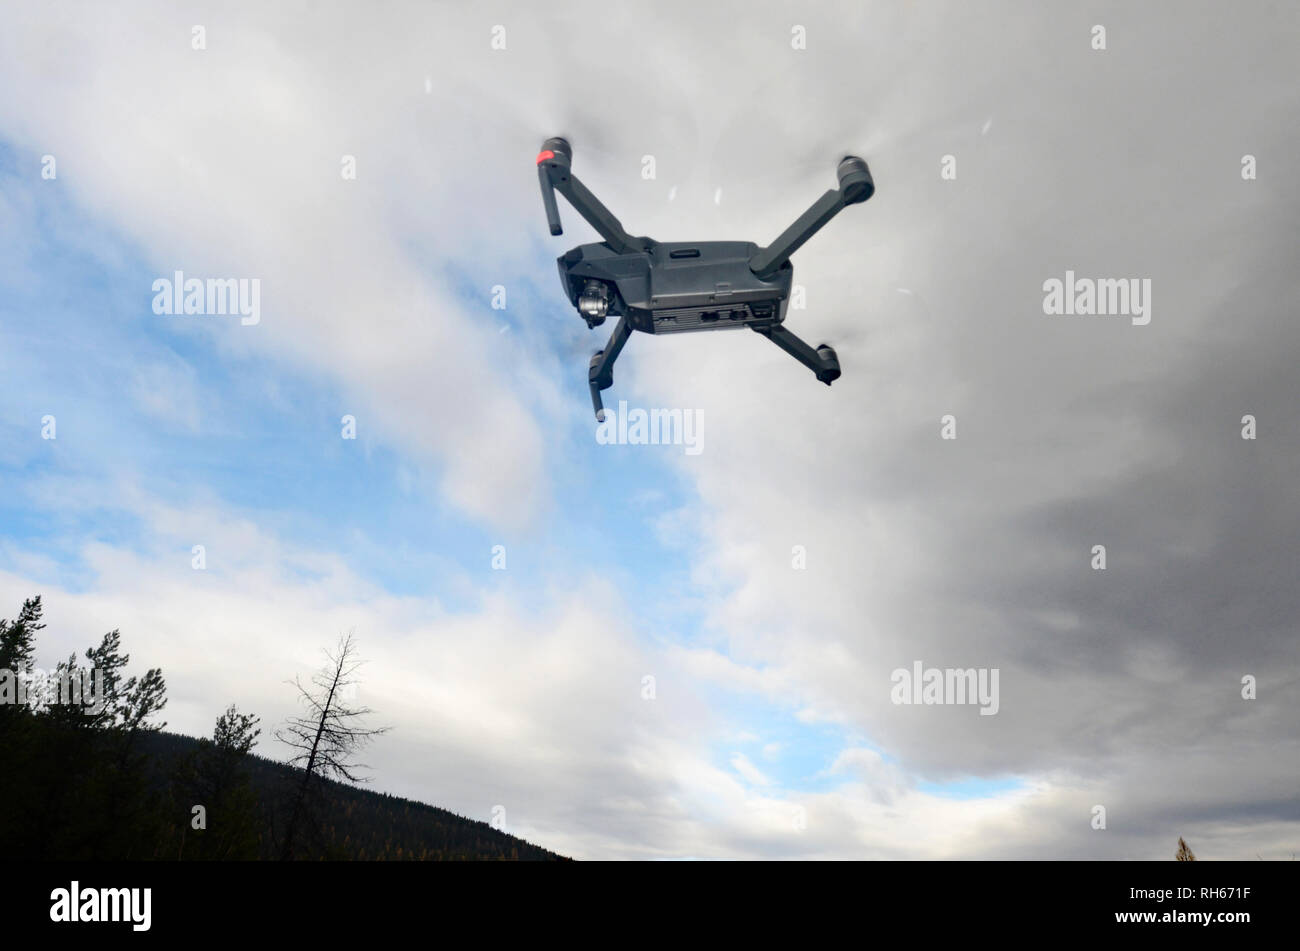 Un drone DJI Mavic Pro exploité par le cinéaste Scott Rulander au cours d'une séance de vidéographie dans les montagnes Purcell, Montana. (Photo de Randy Beacham) Banque D'Images